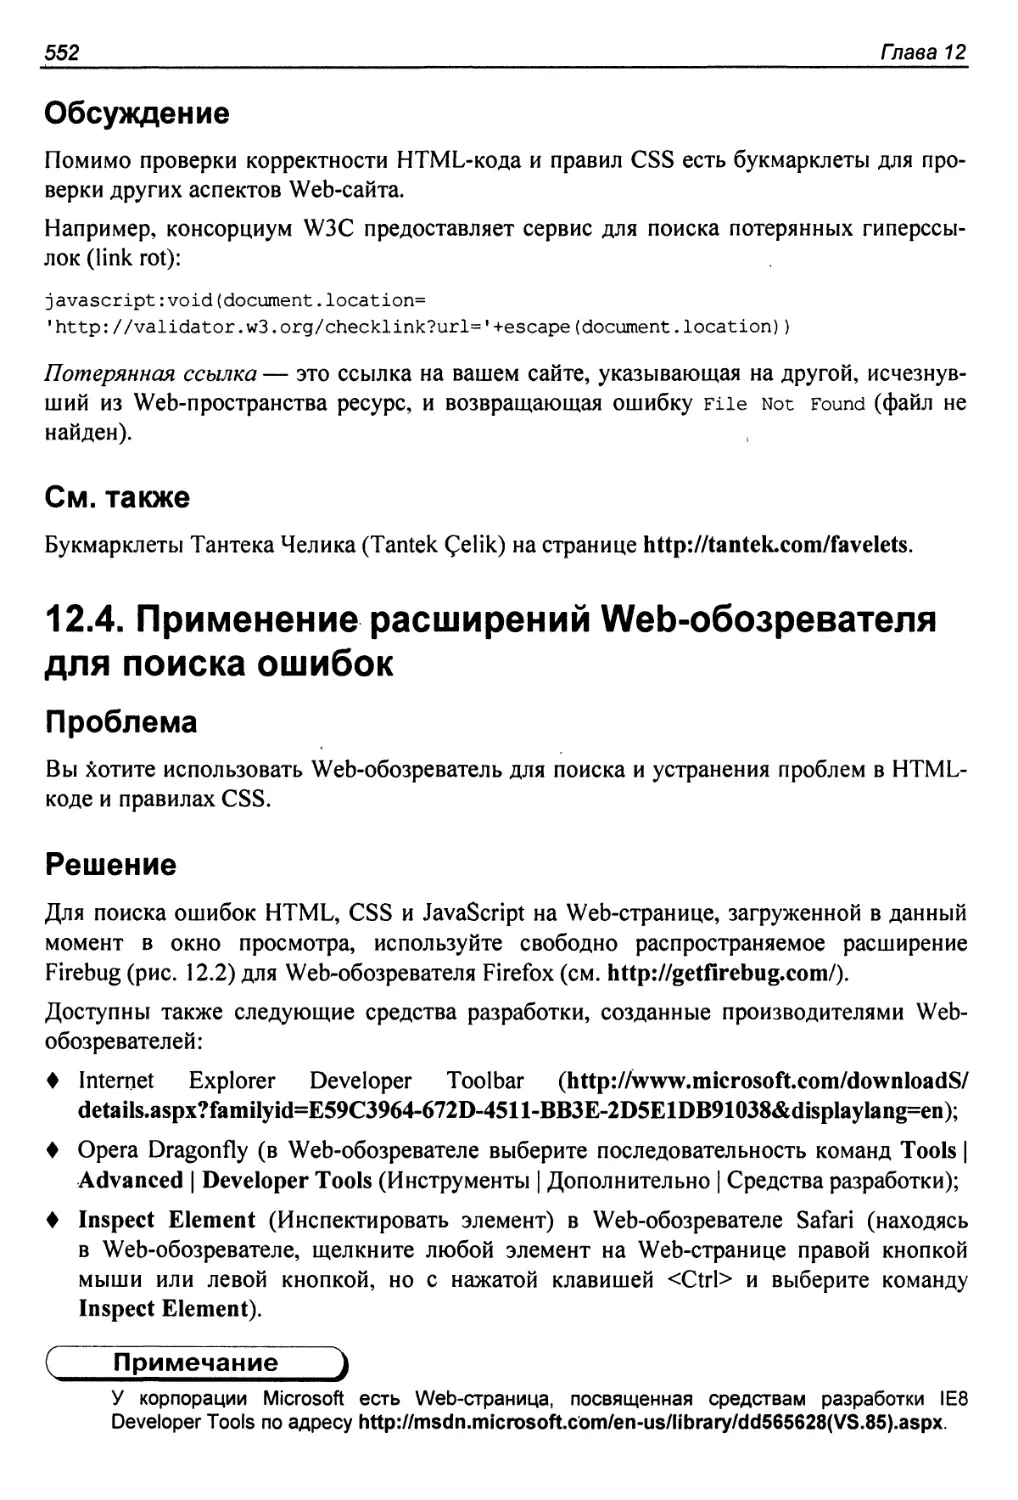 12.4. Применение расширений Web-обозревателя для поиска ошибок